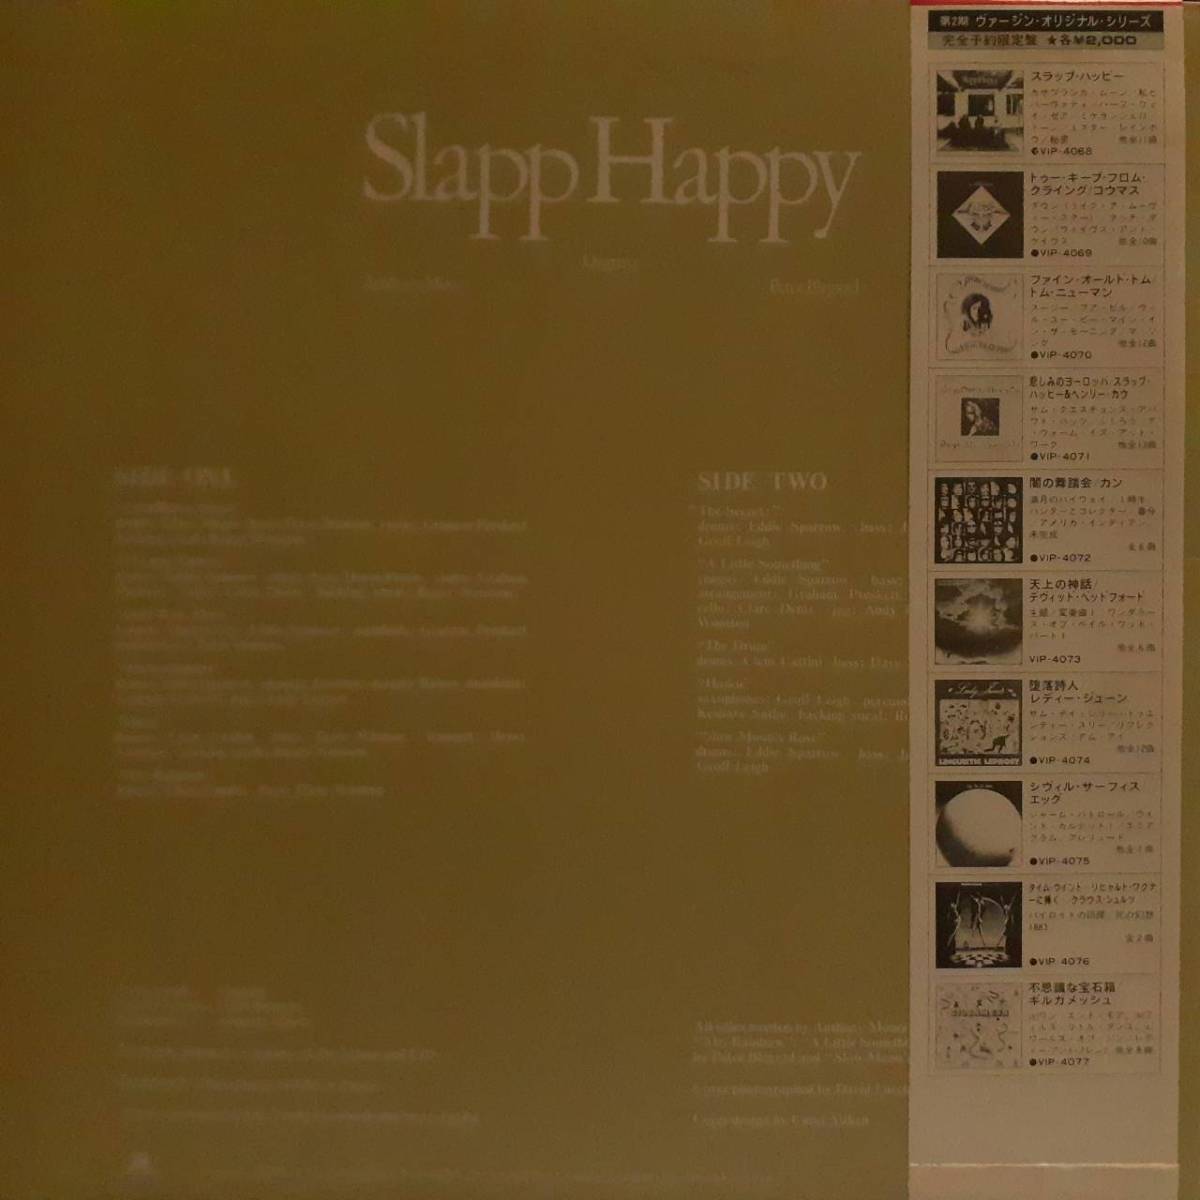 美品 日本VIRGIN盤LP 緑双子ラベル Slapp Happy / Slapp Happy 1980年 VICTOR VIP-4068 カンタベリー名盤 Peter Blegvad Dagmar Krause OBI_画像3